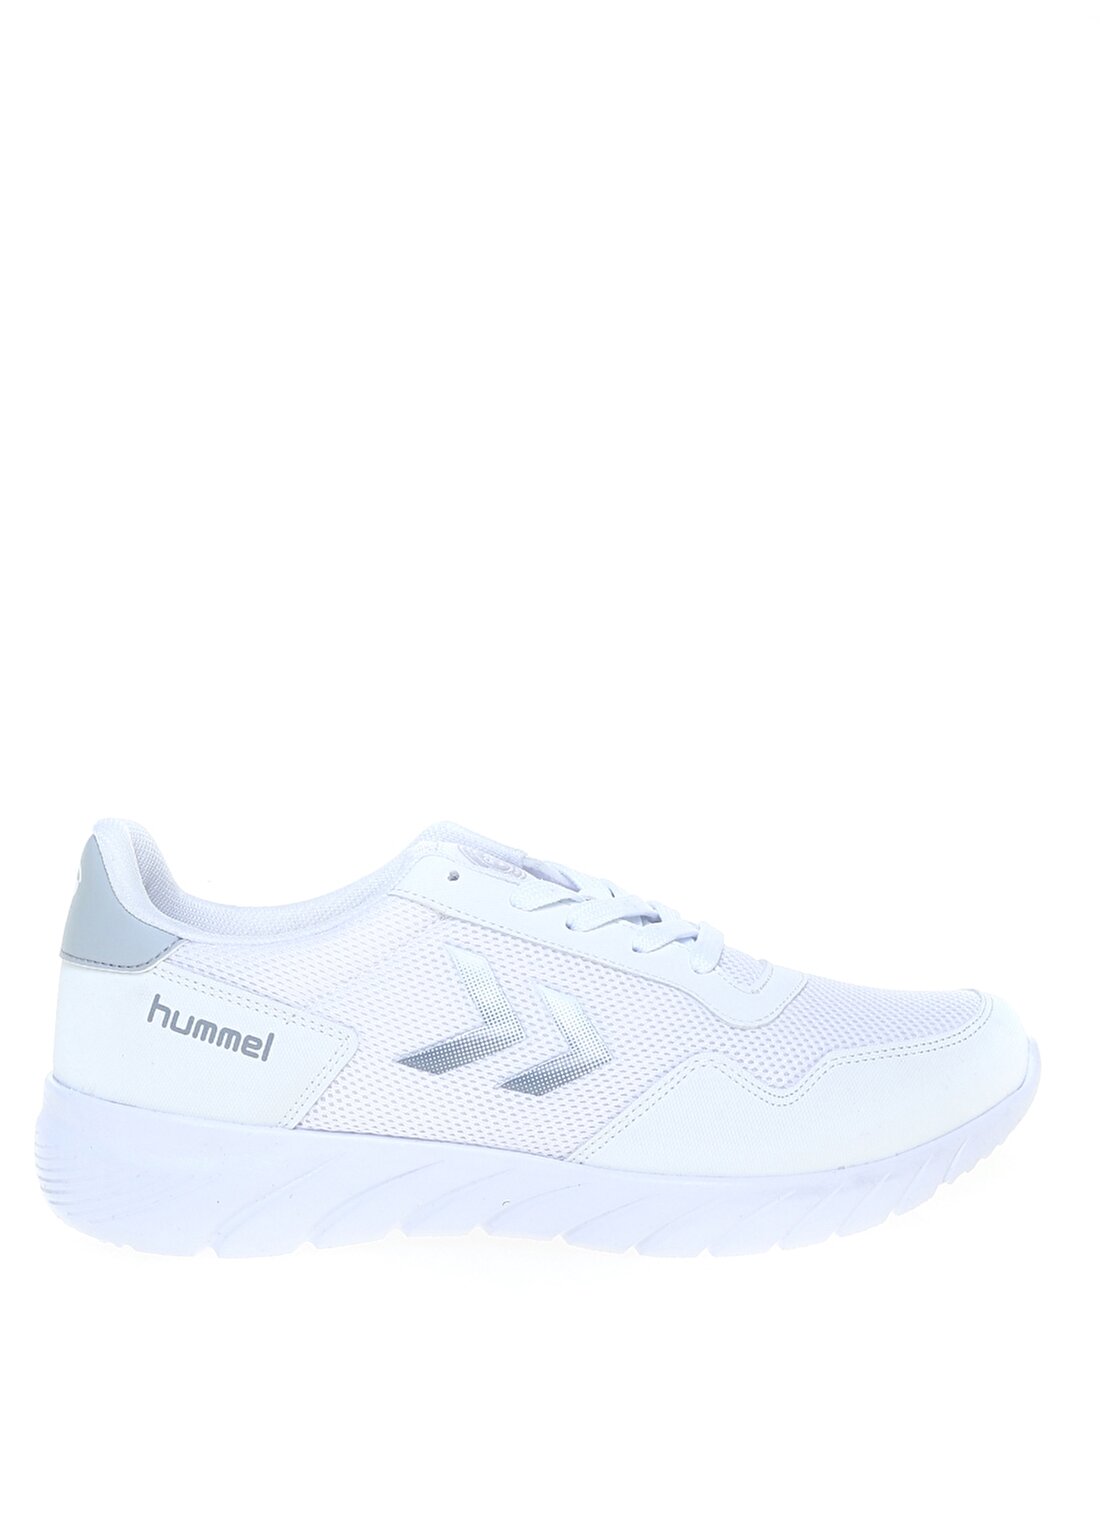 Hummel DELTA Beyaz Kadın Koşu Ayakkabısı 212609-9001